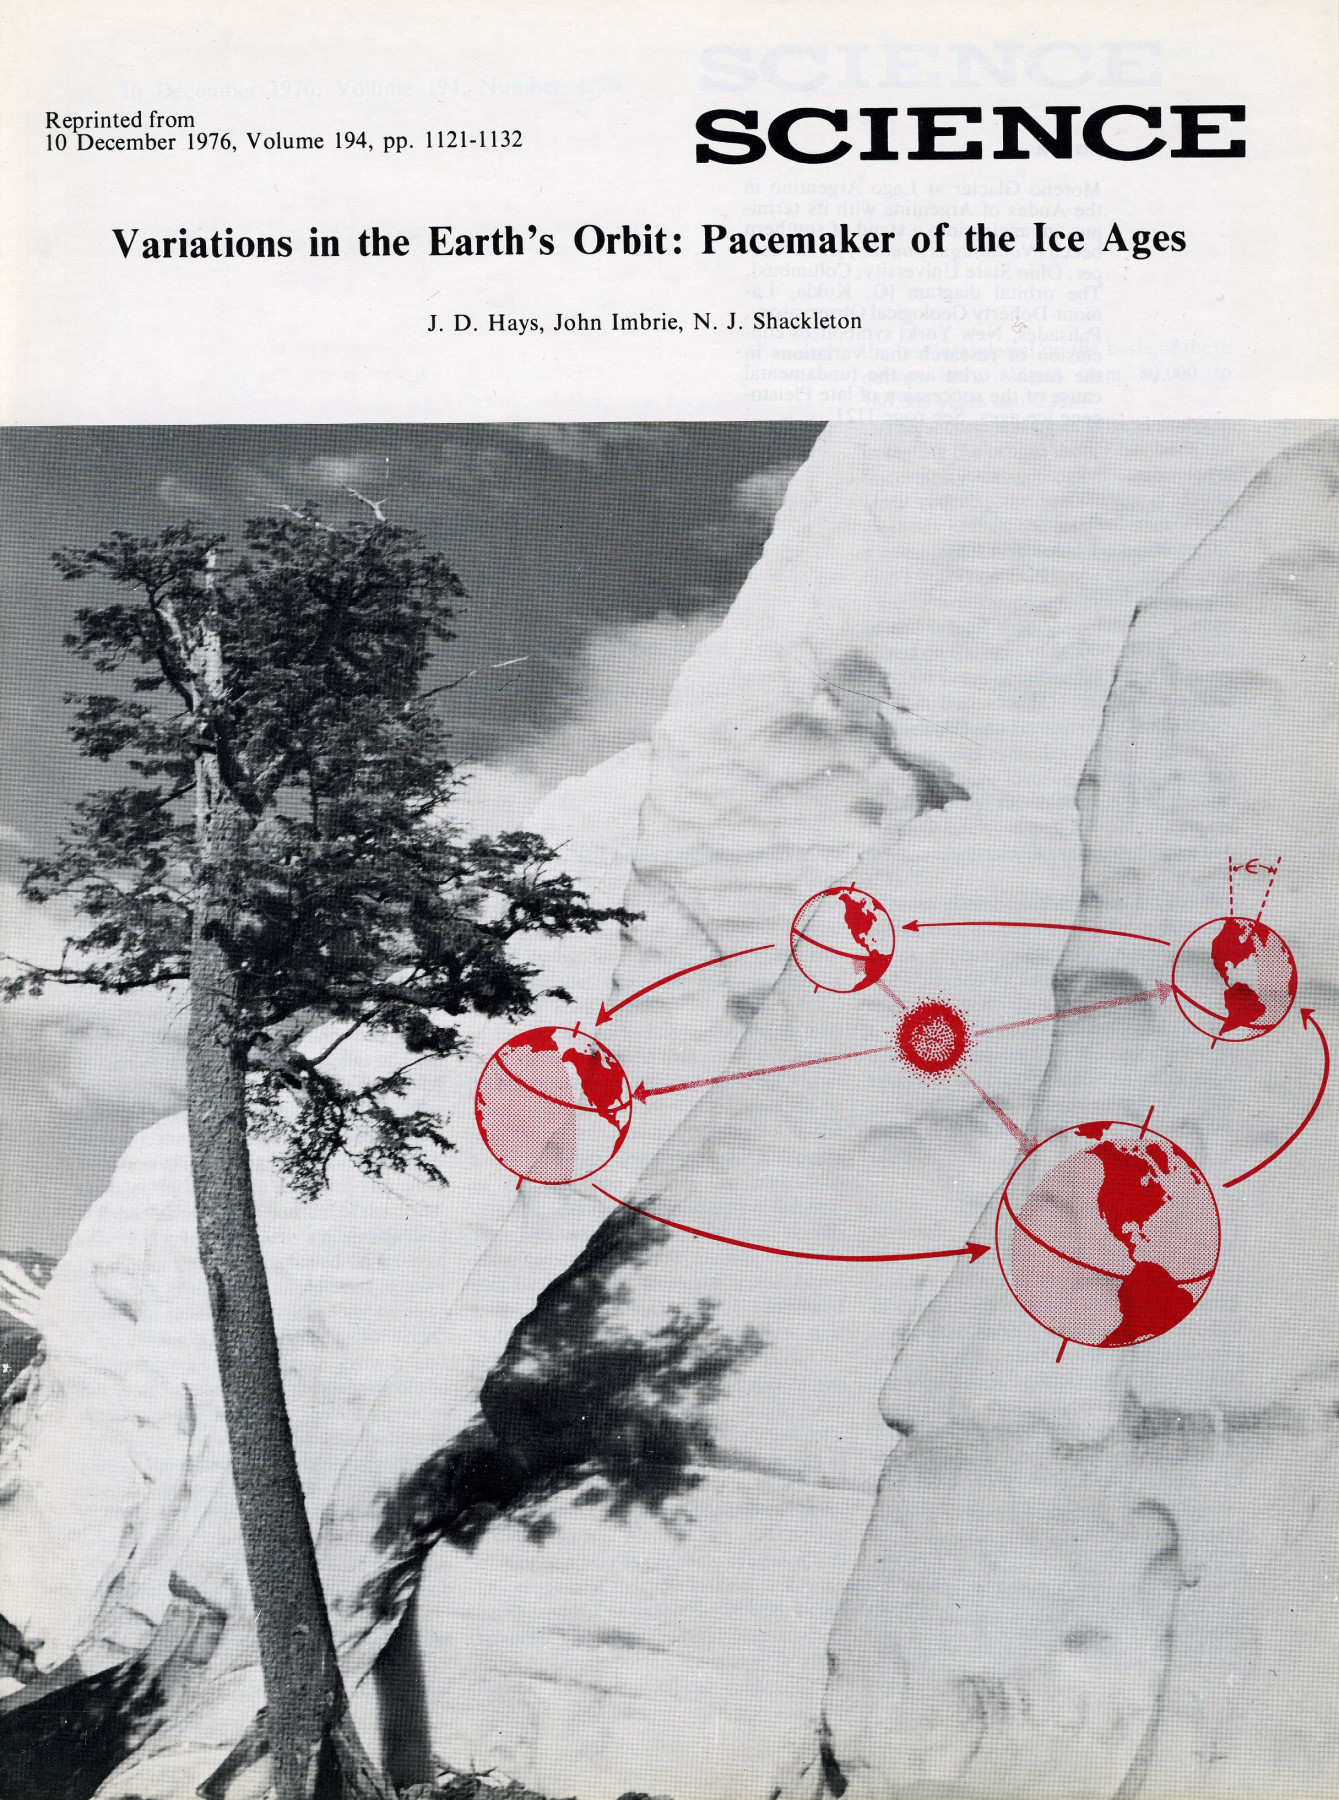  Titelbild eines Nachdrucks des wissenschaftlichen Journals Science. Foto eines Baumes an einer Klippe überlagert von einer roten Illustration der Erdumlaufbahn um die Sonne.